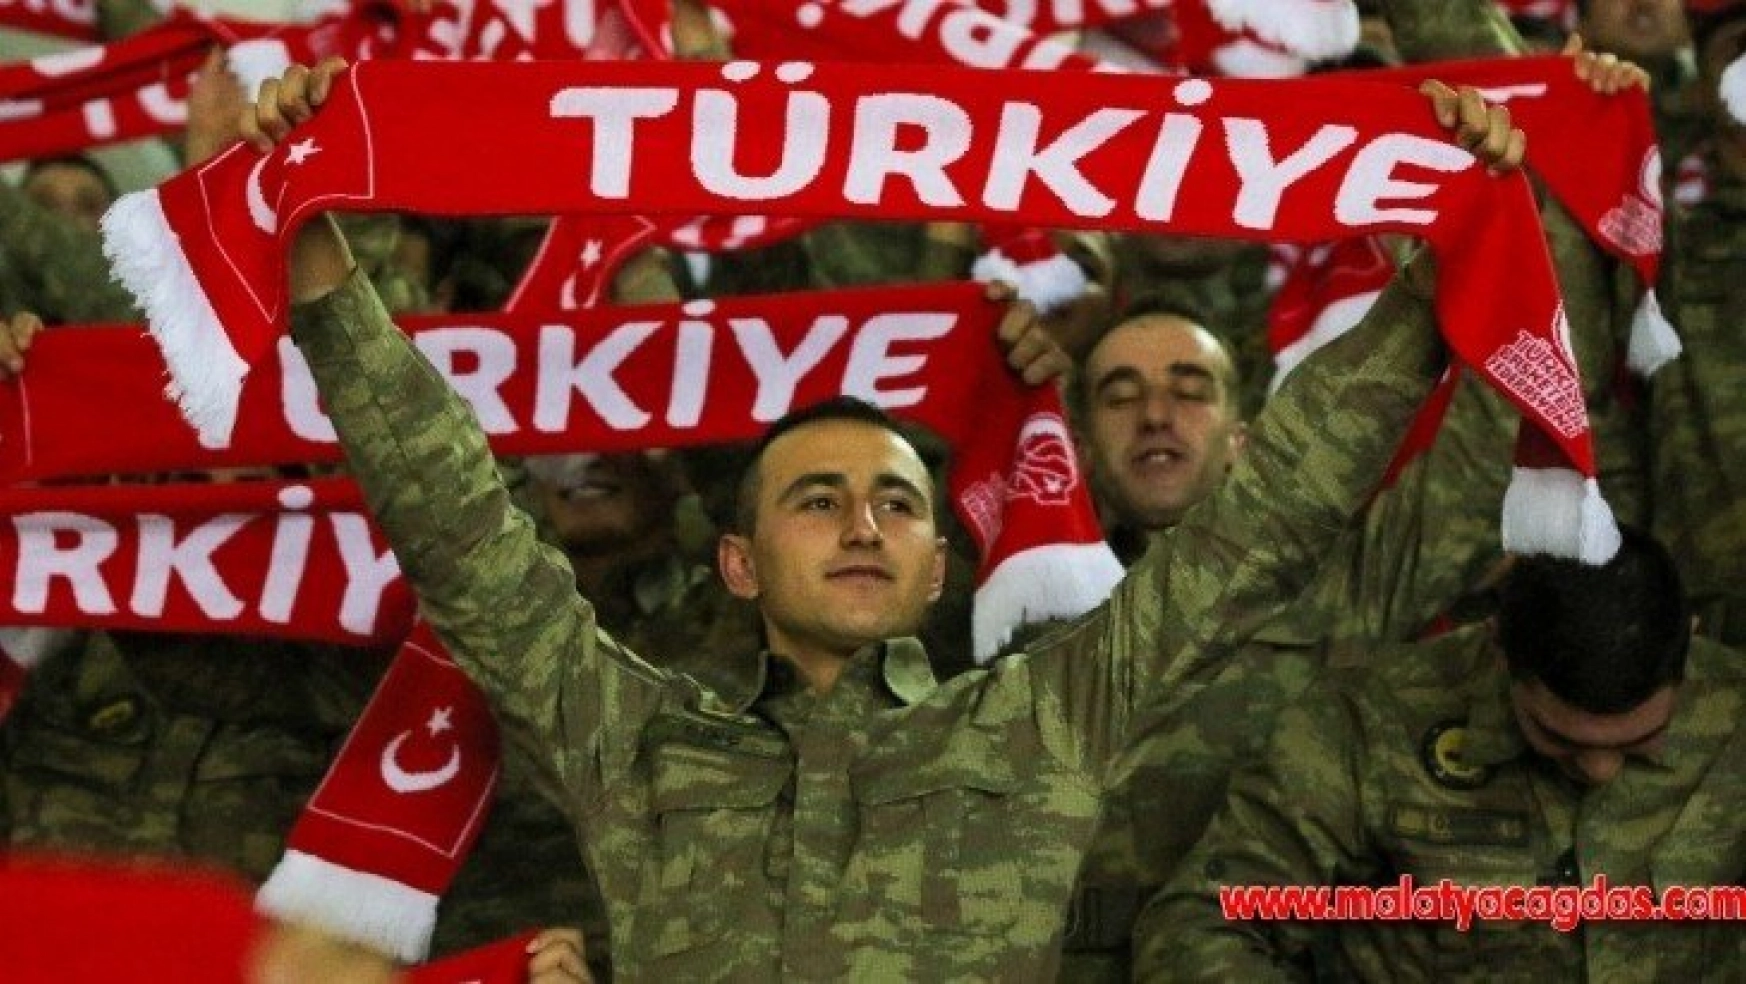 Türk Silahlı Kuvvetleri'nden Milli Takıma destek